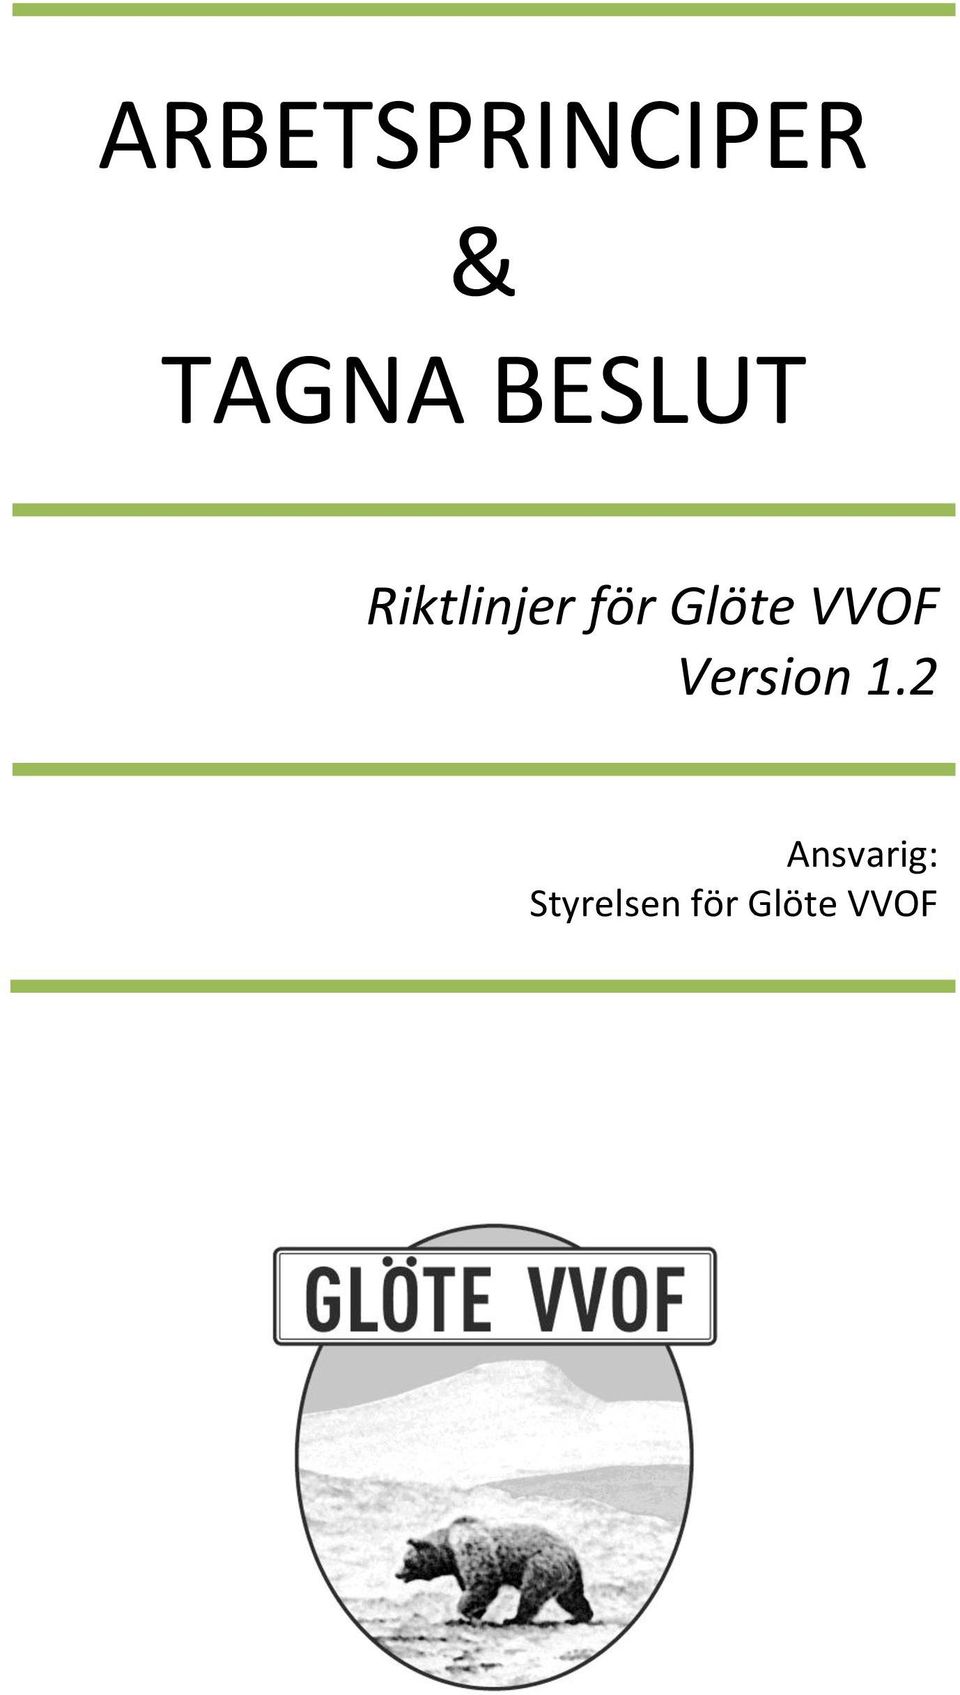 Glöte VVOF Version 1.